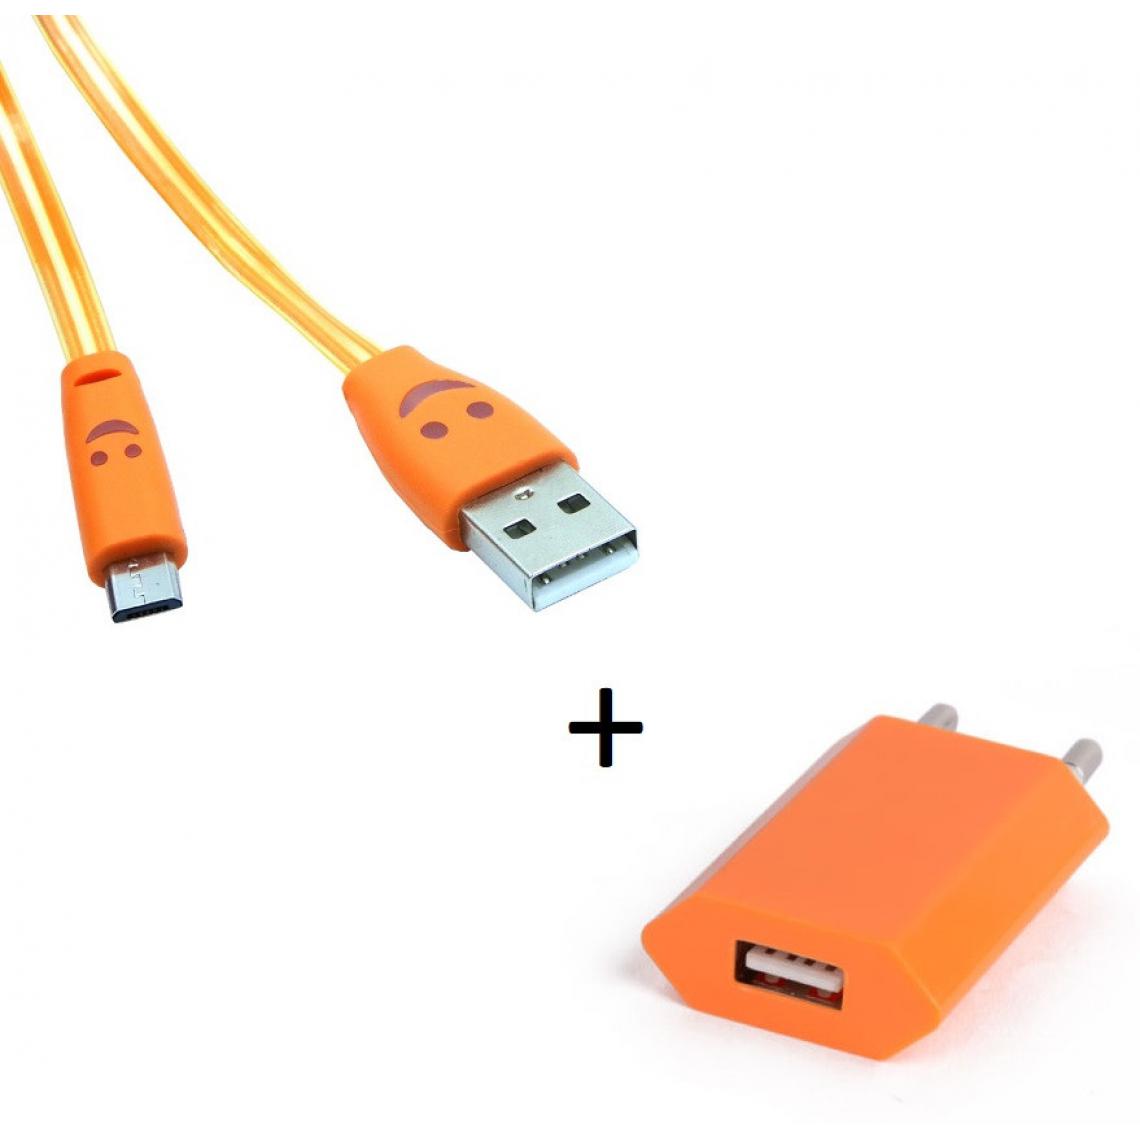 Shot - Pack Chargeur pour XIAOMI Redmi S2 Smartphone Micro USB (Cable Smiley LED + Prise Secteur USB) Android (ORANGE) - Chargeur secteur téléphone